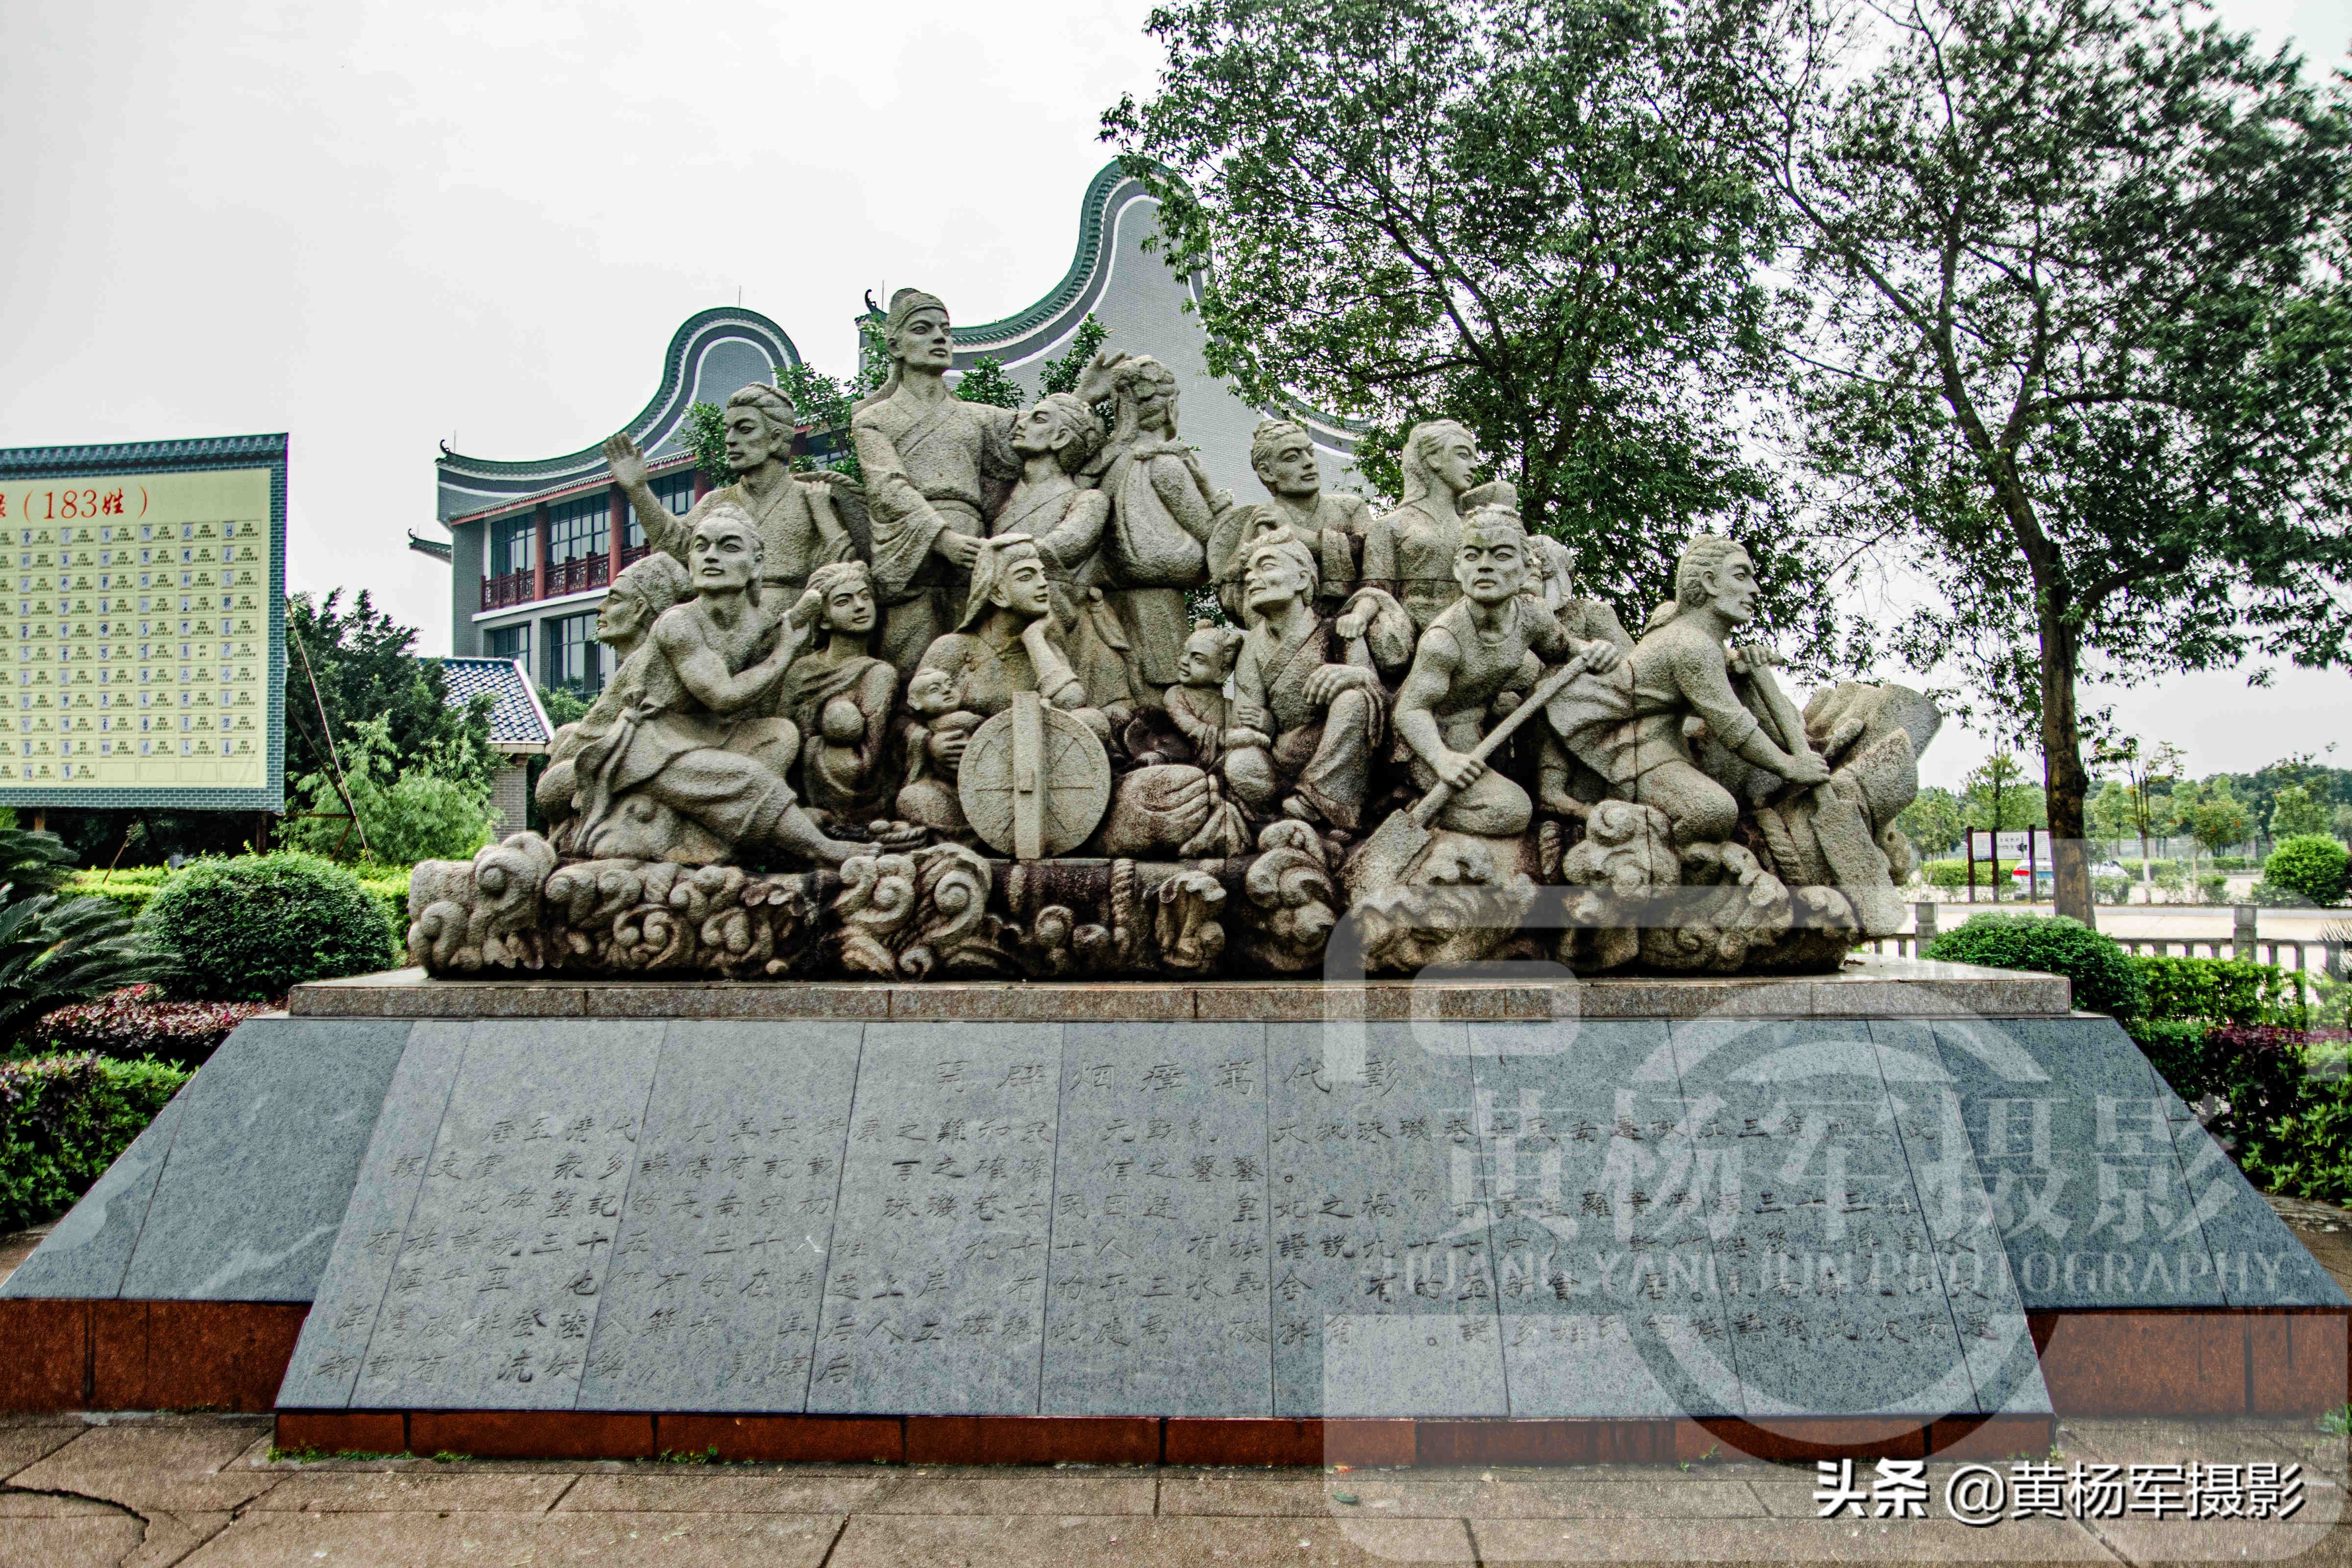 中国三大寻根地之一，姓氏文化非常浓厚，众多广东人的祖先发祥地